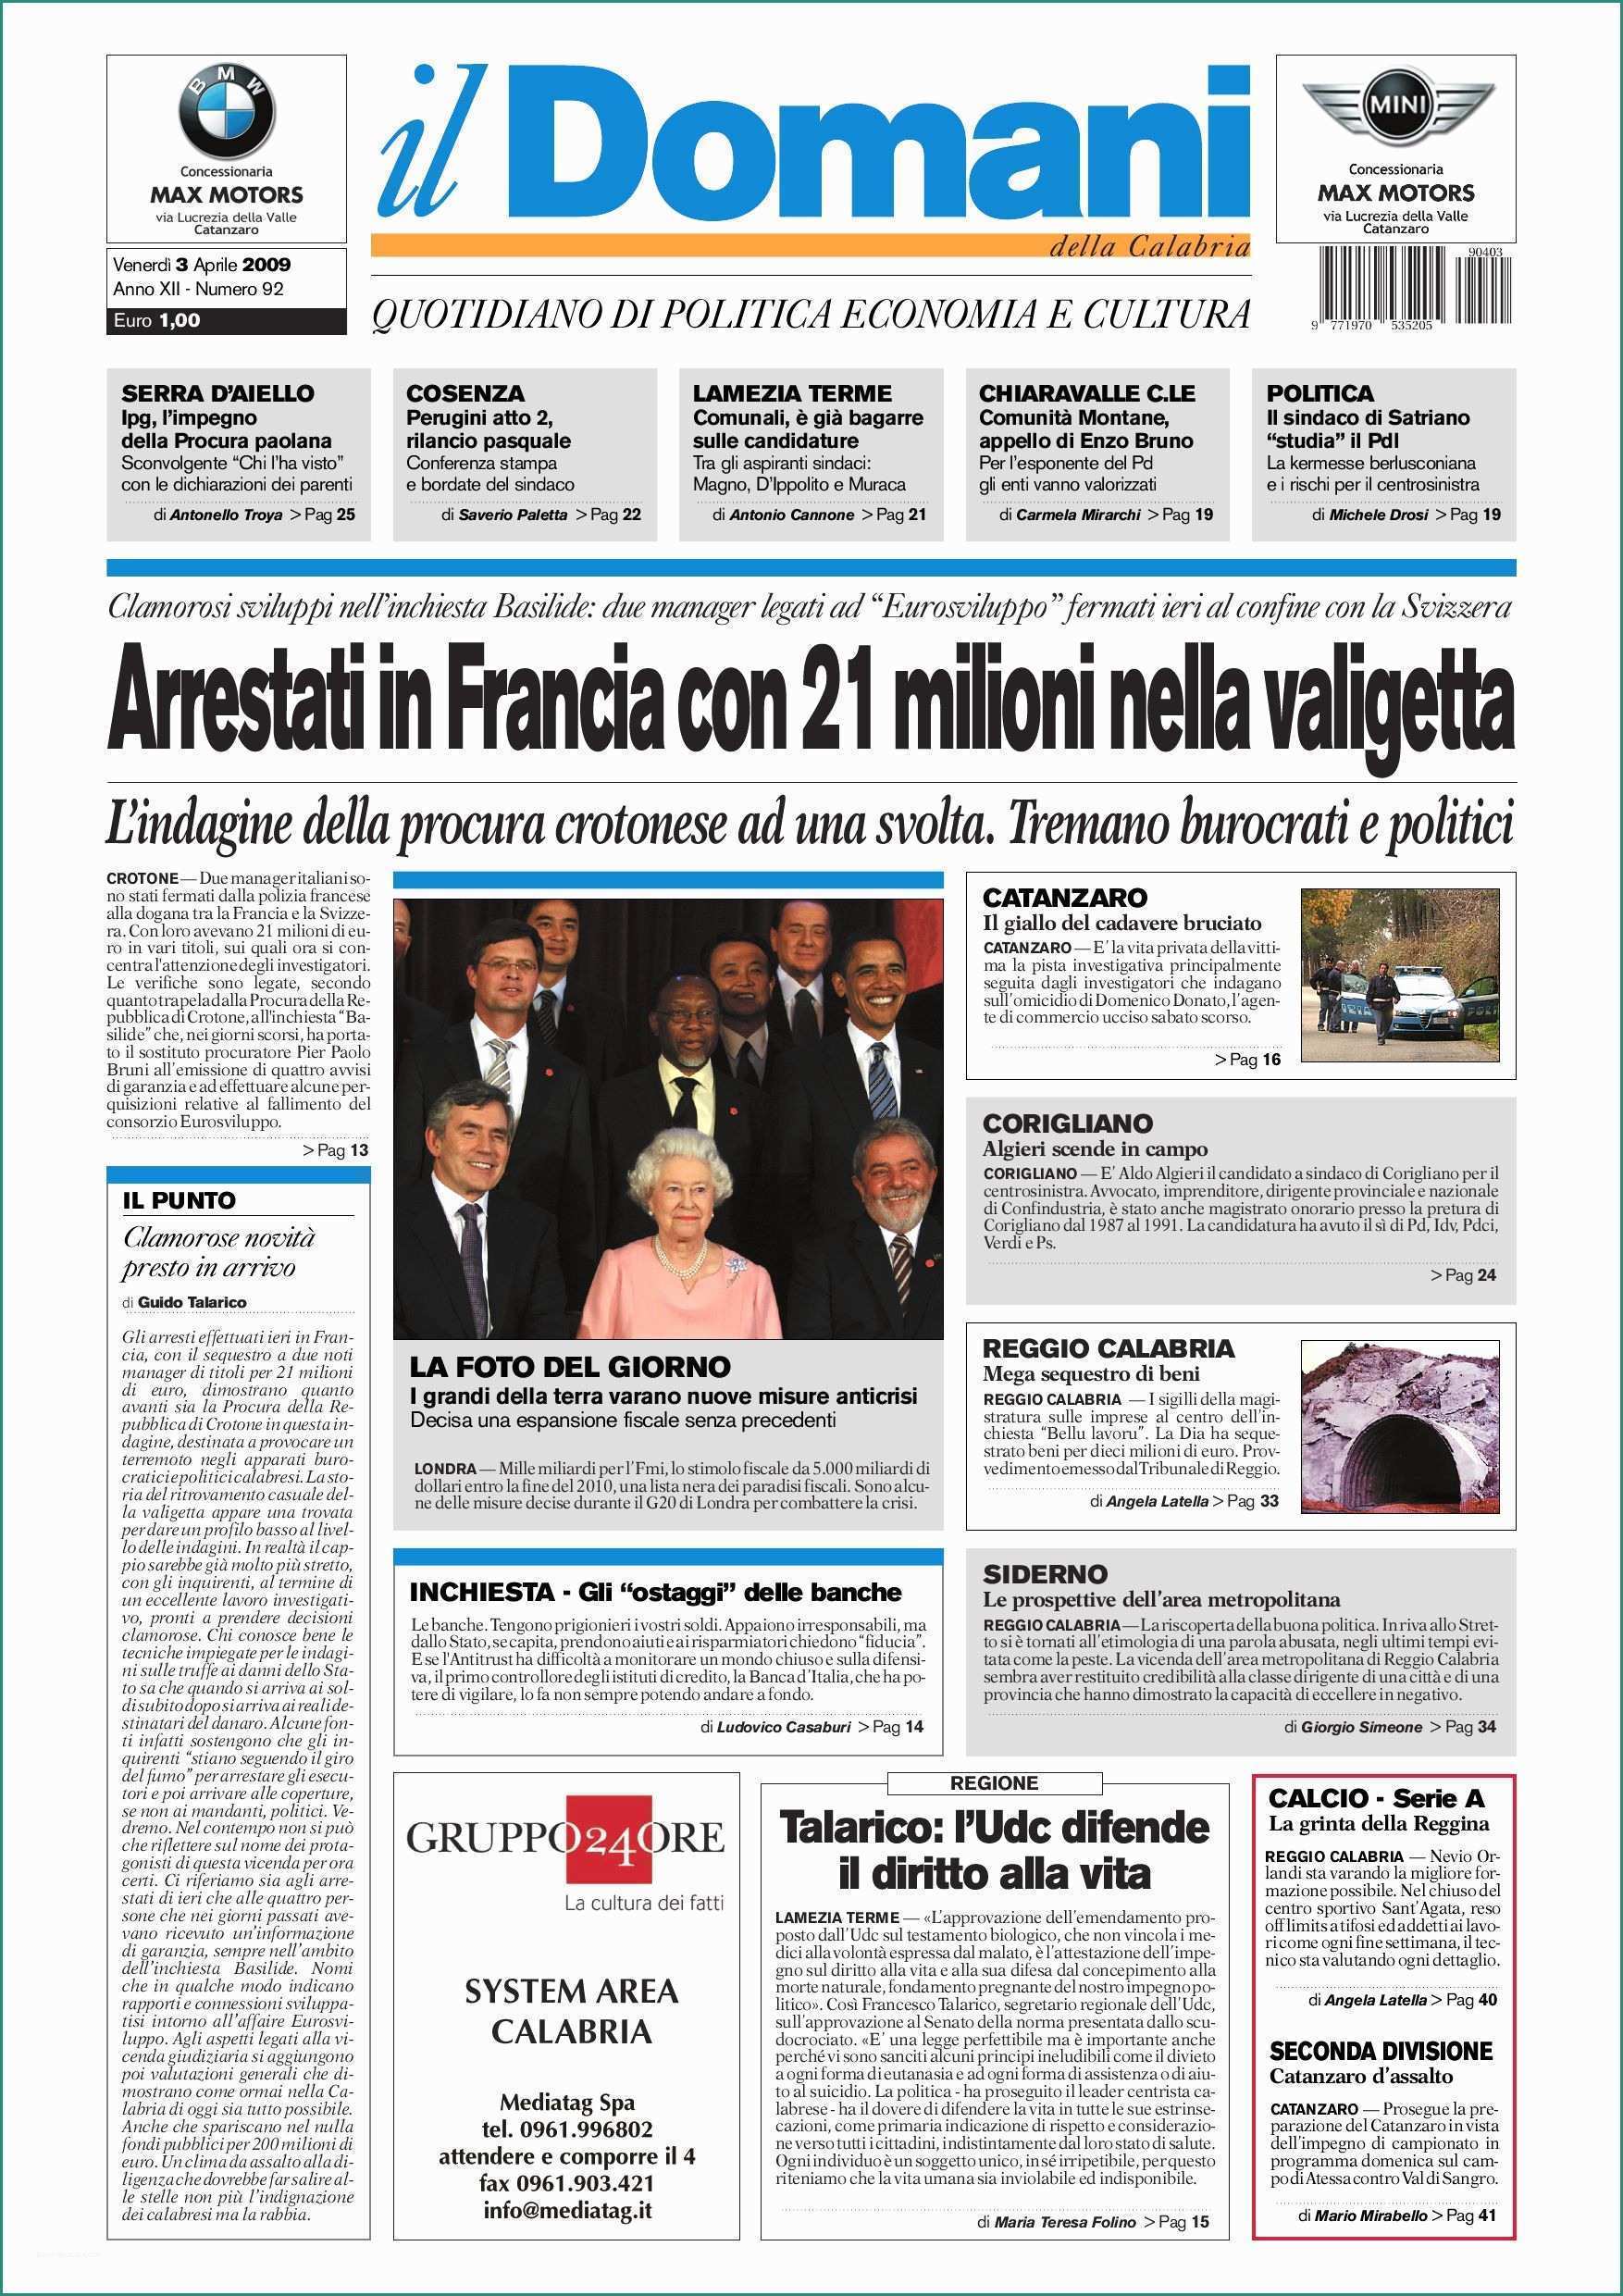 Poltrona Frau Spaccio E Il Domani by T&p Editori Il Domani issuu